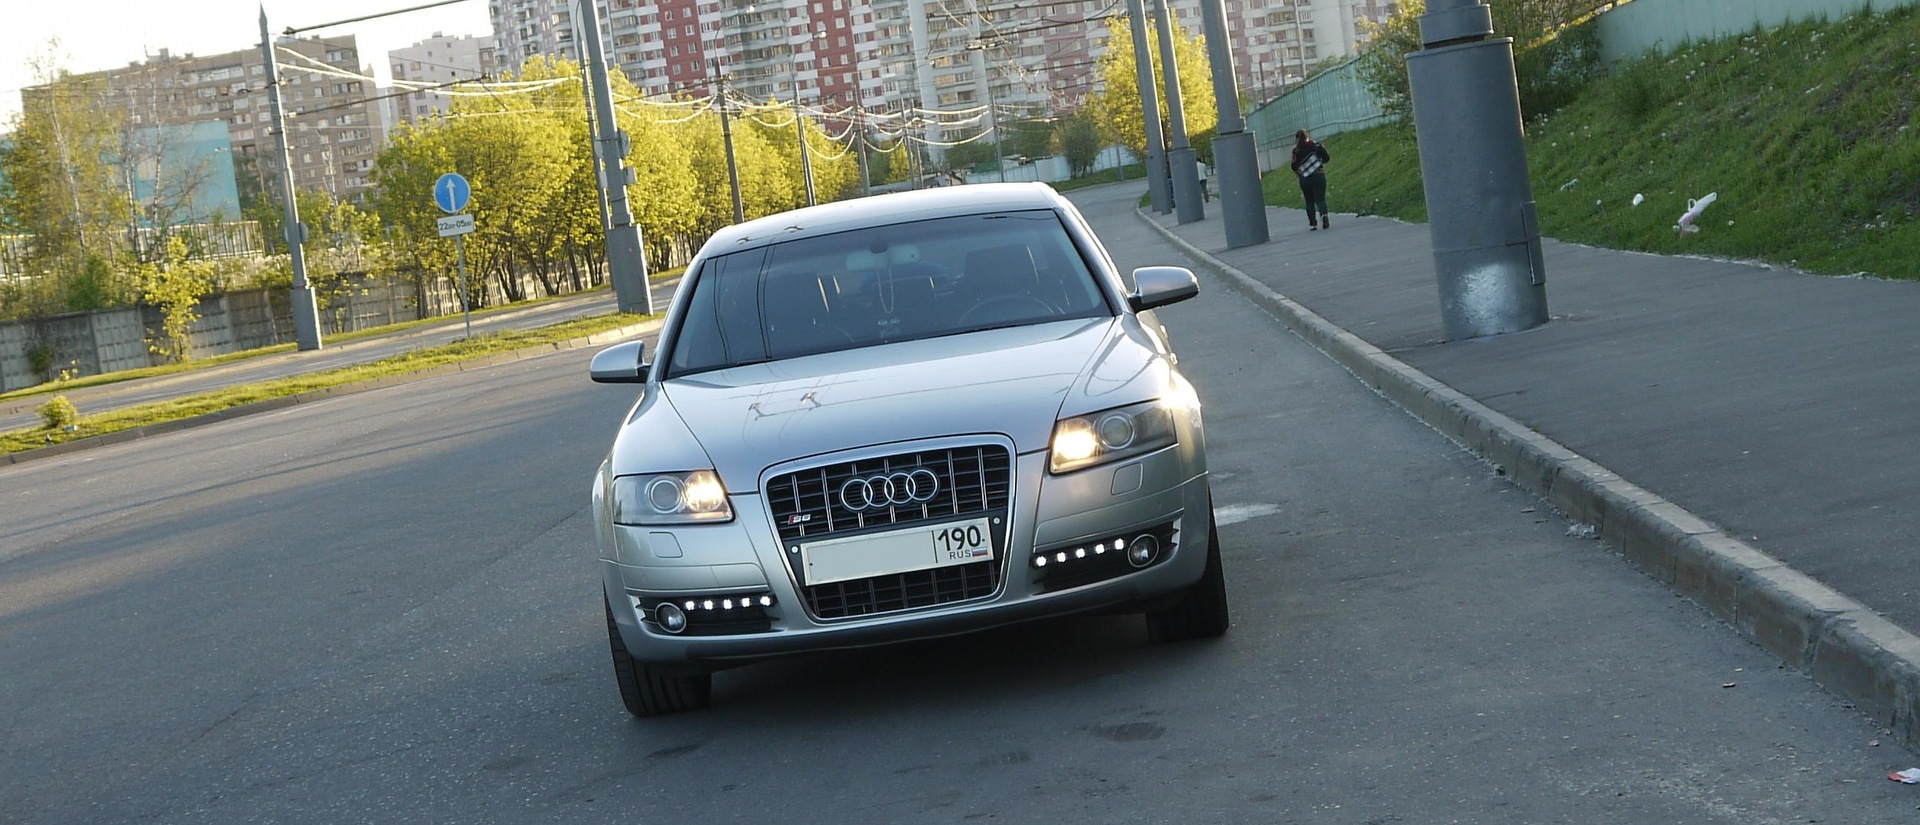 Дневные ходовые огни LED Star на Audi A4 B8